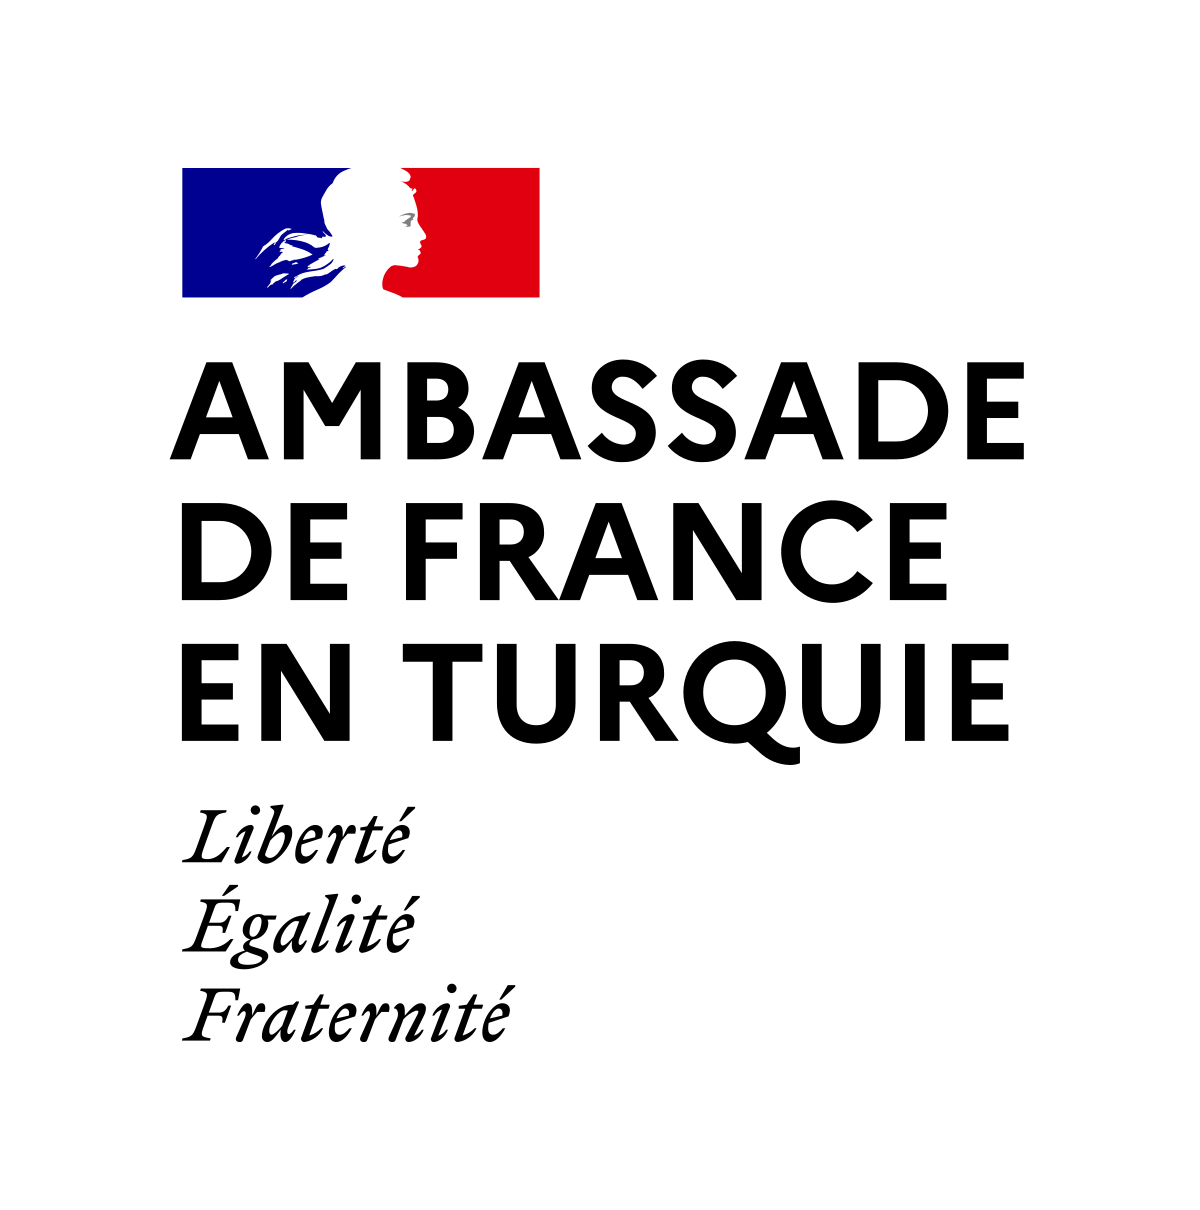 Ambassade de France en Turquie